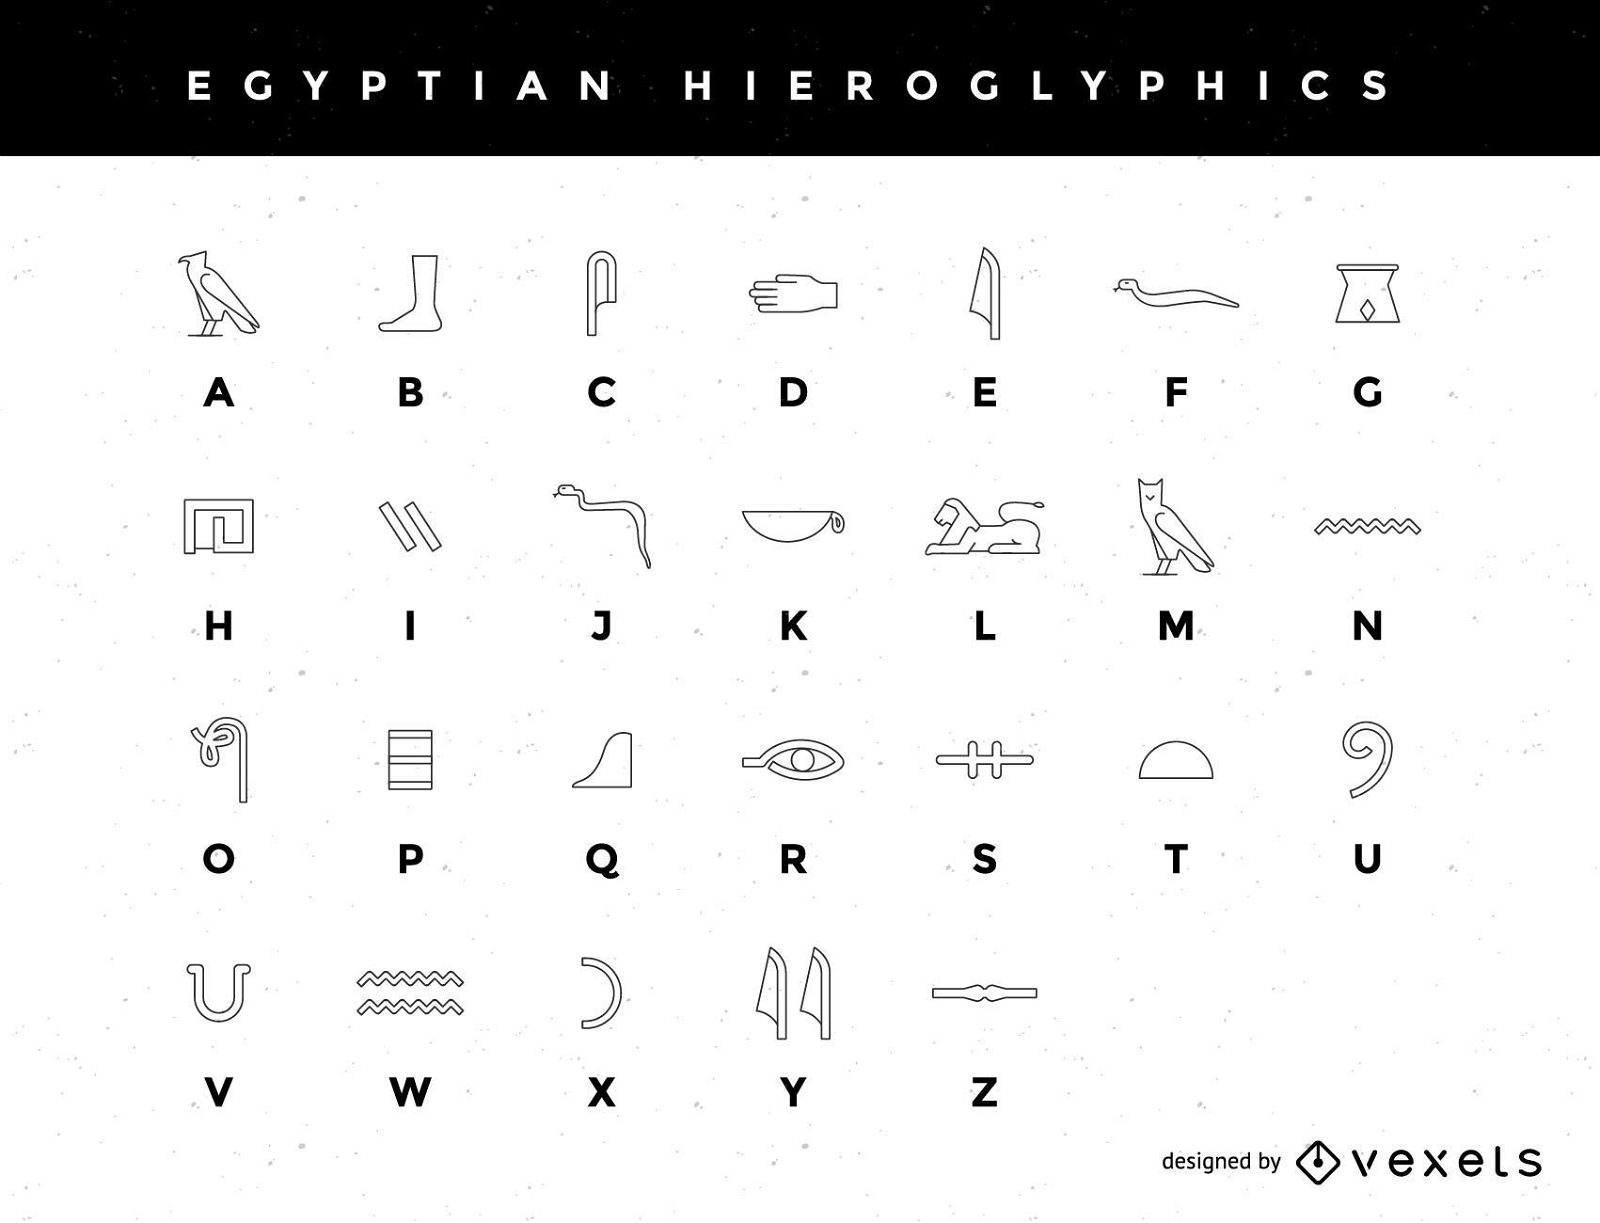 A Stylized Egyptian Hieroglyphic Alphabet